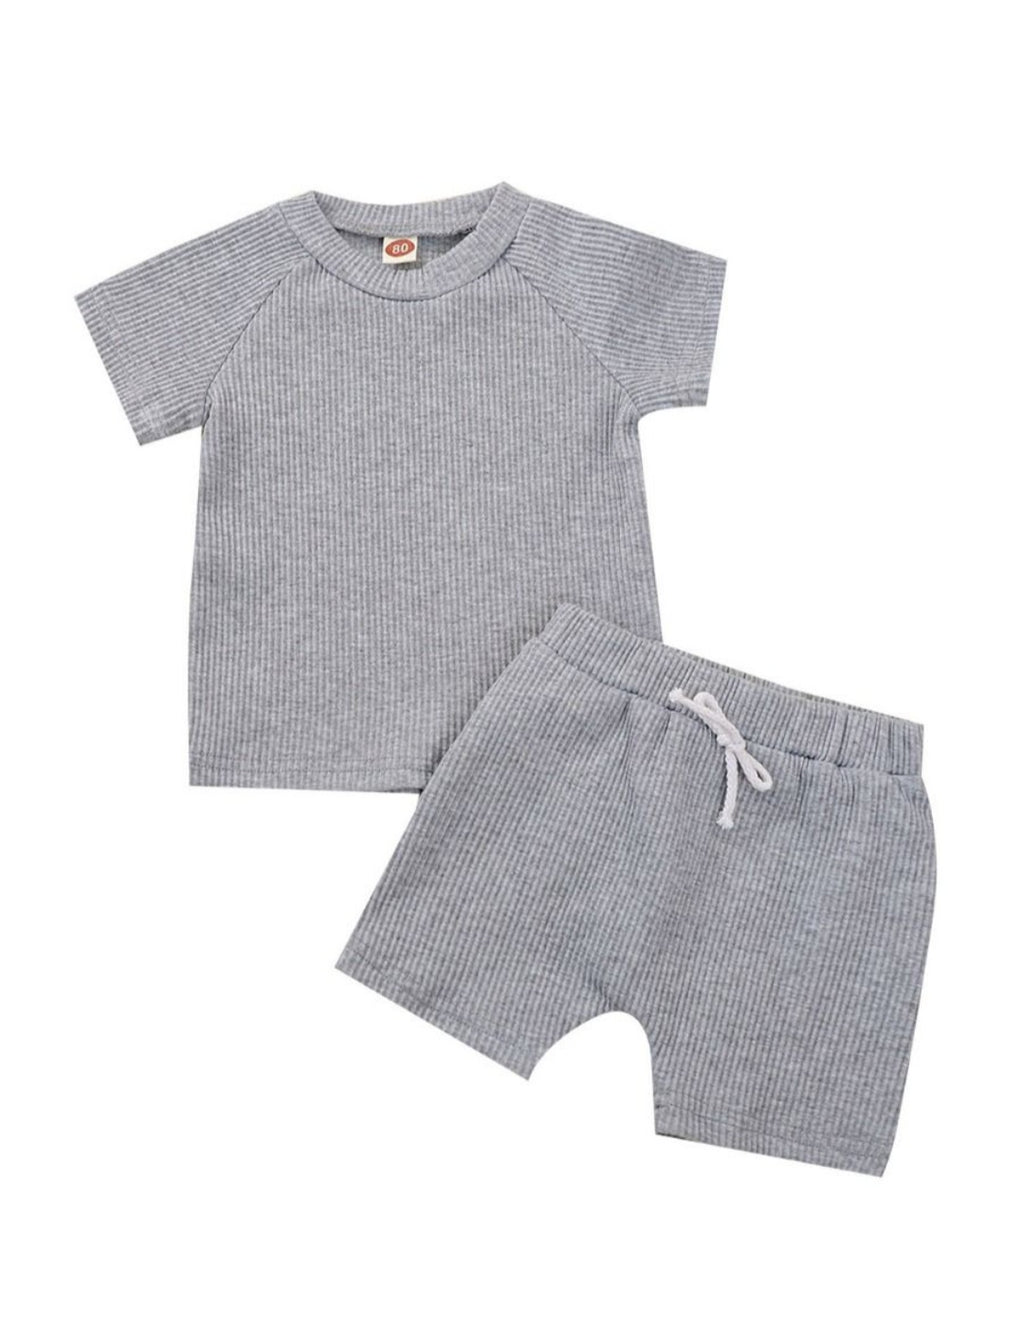 Grey ribbed shorts set